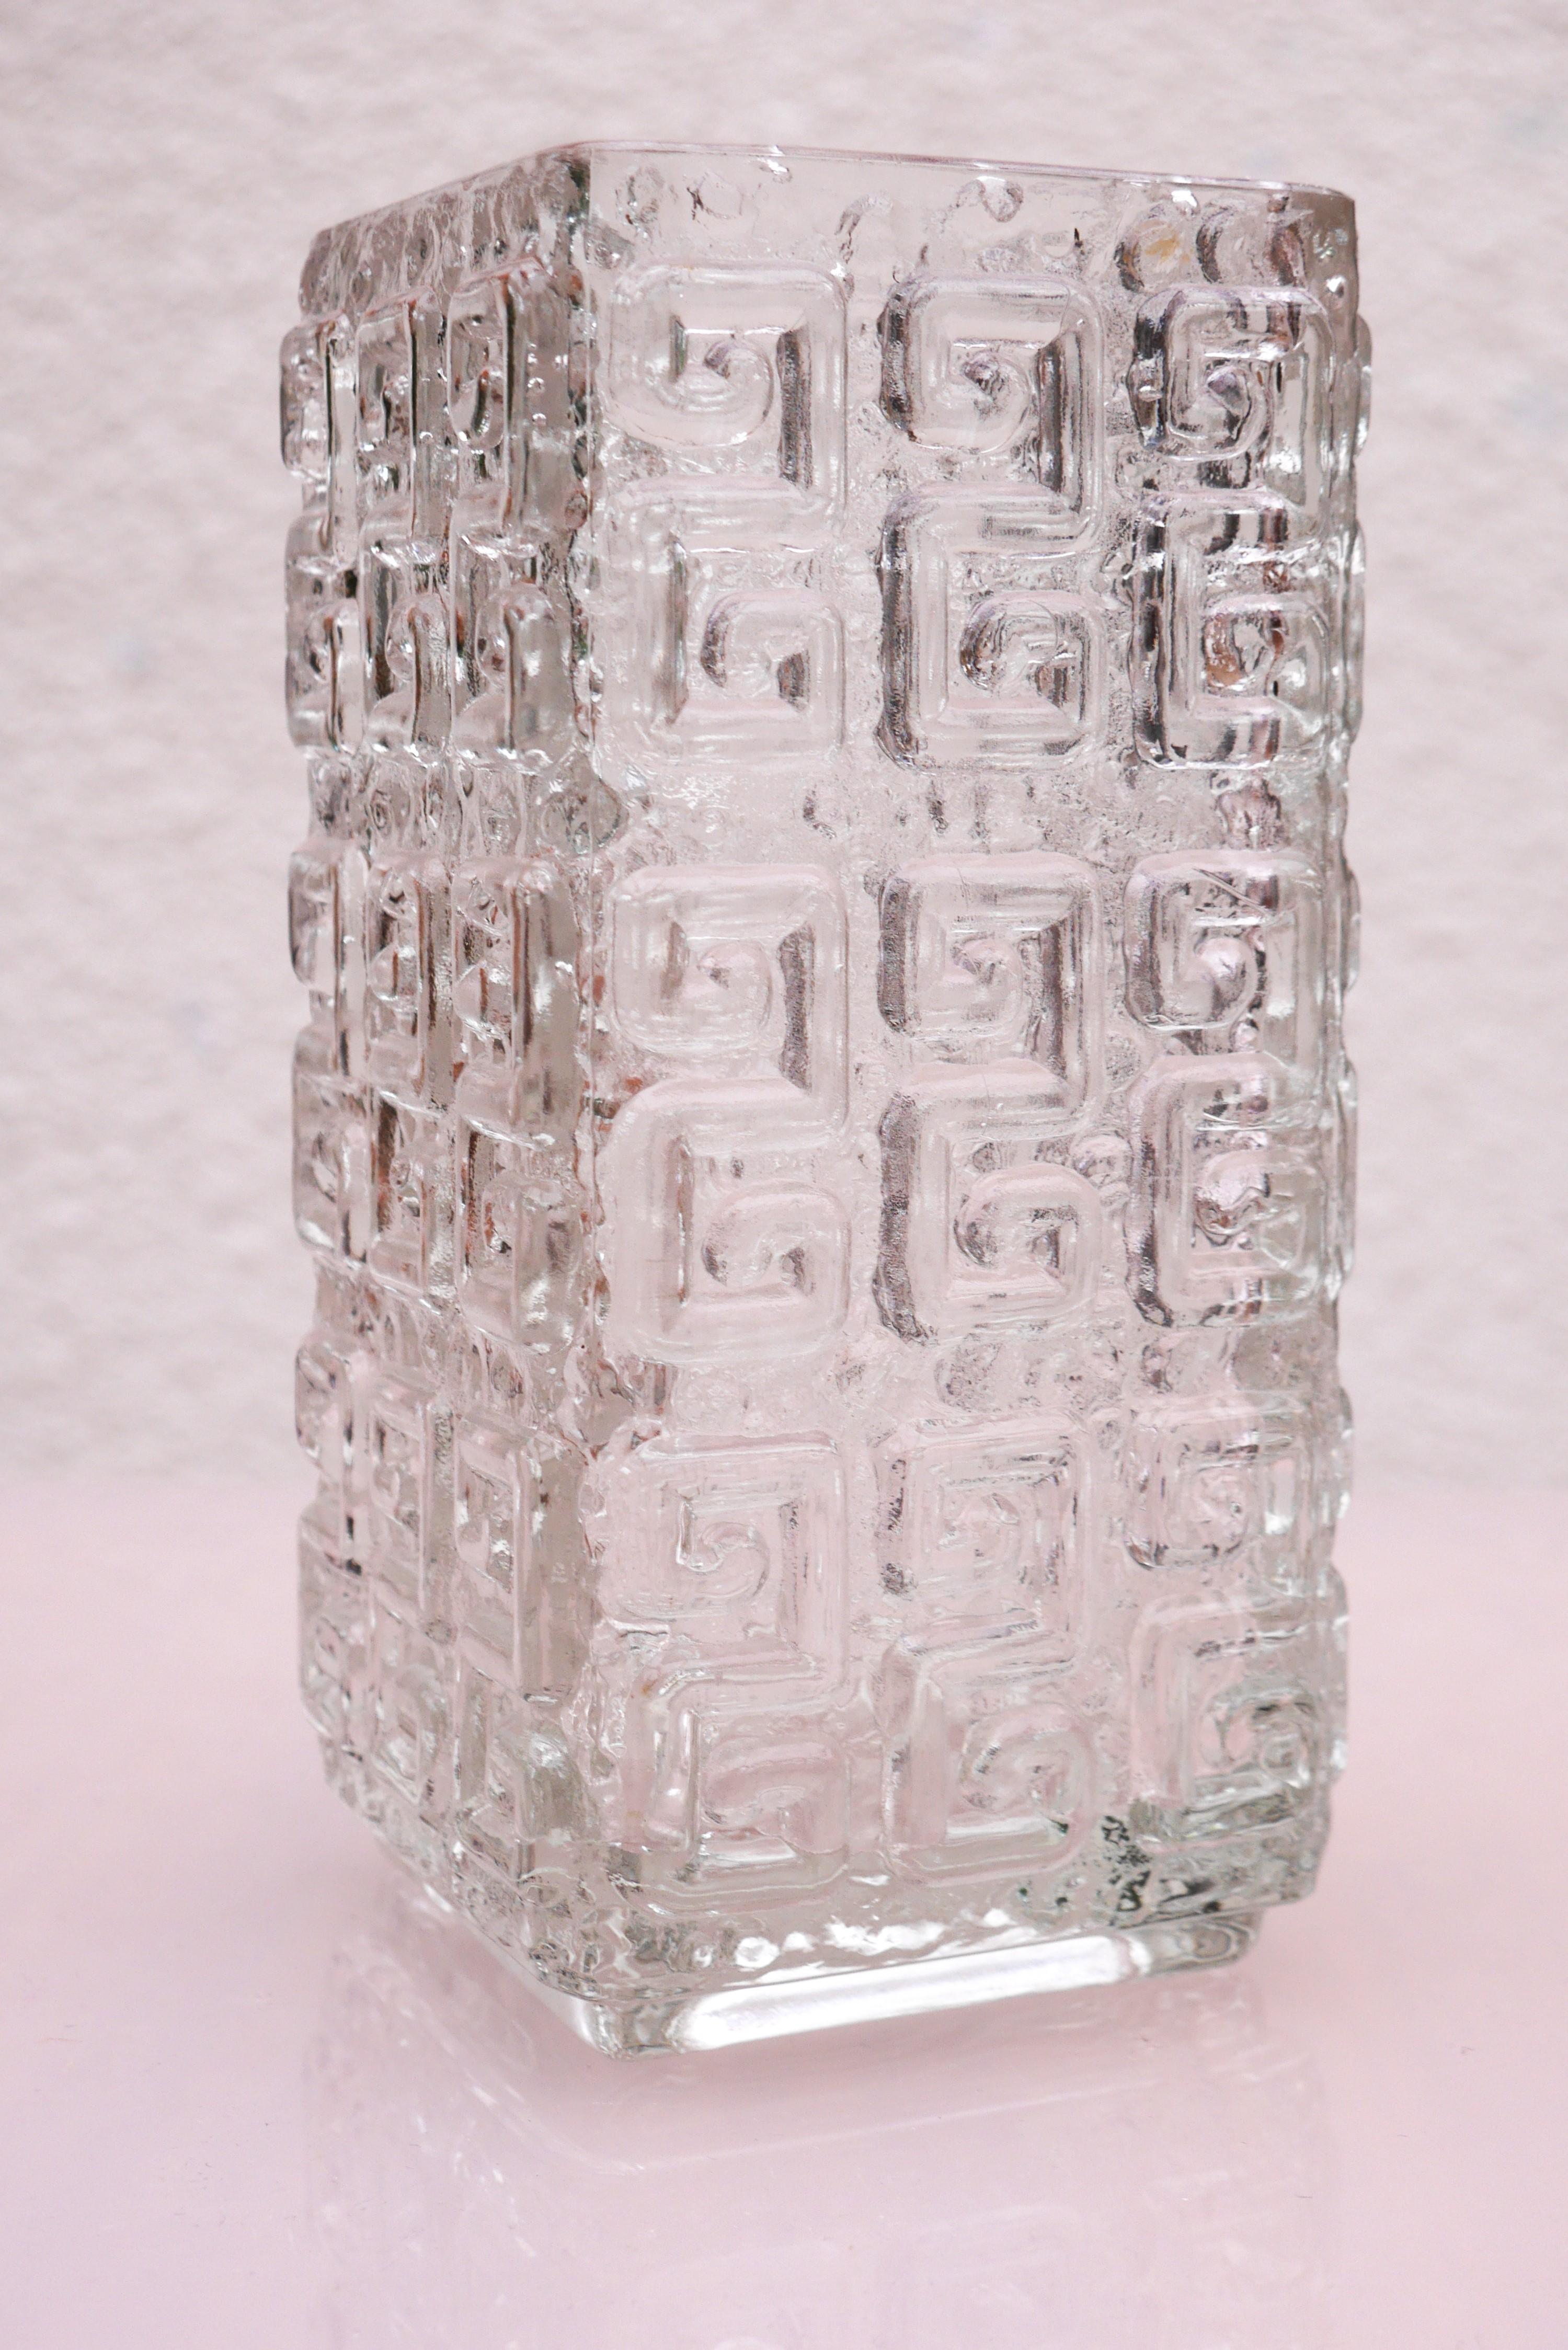 Un étonnant vase en cristal finlandais de Riihimäen lasi réalisé par Tamara Aladin et connu sous le nom de 